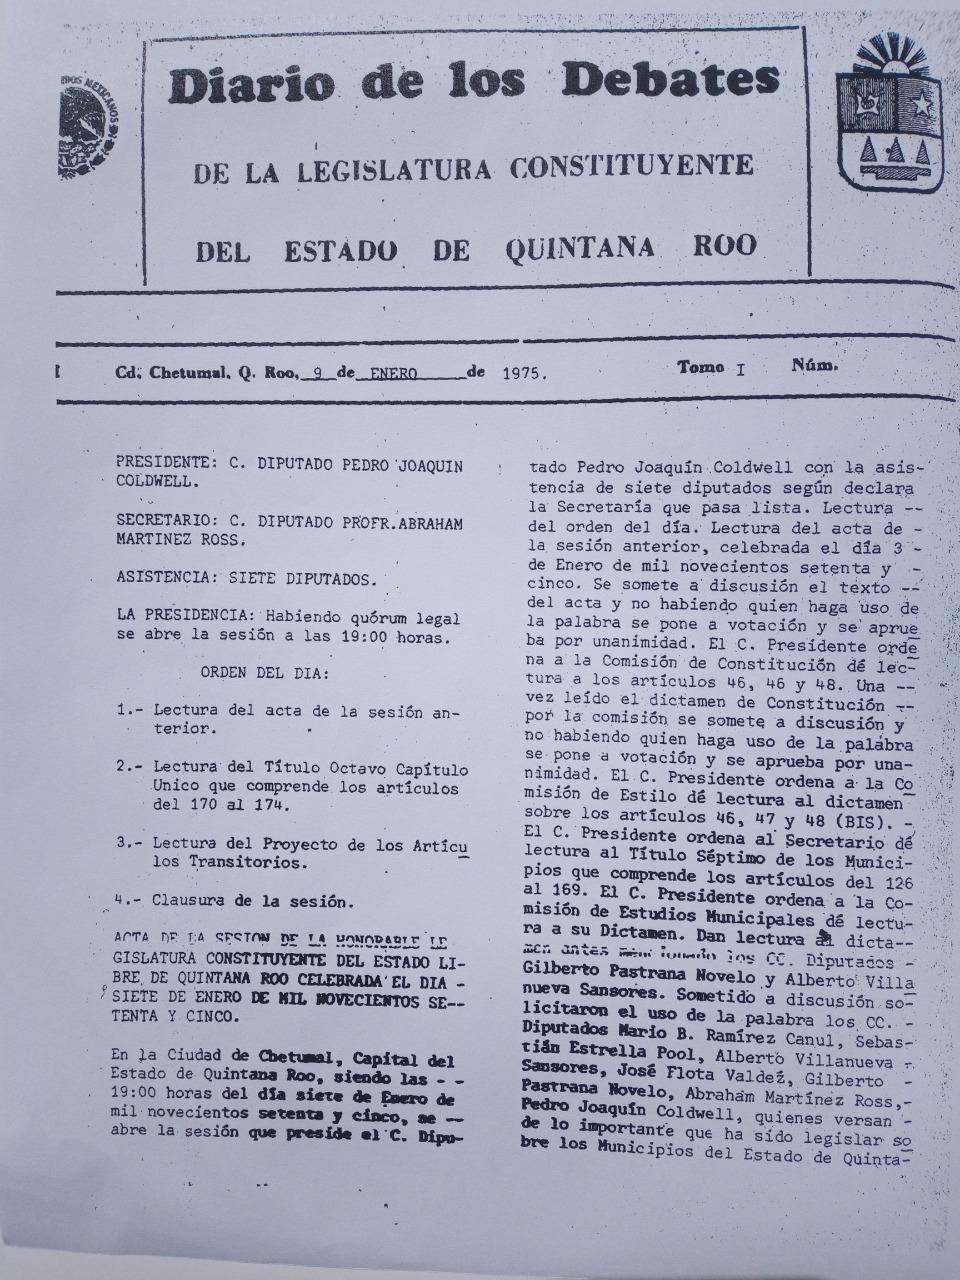 Diario de los Debates 09/ene/1975